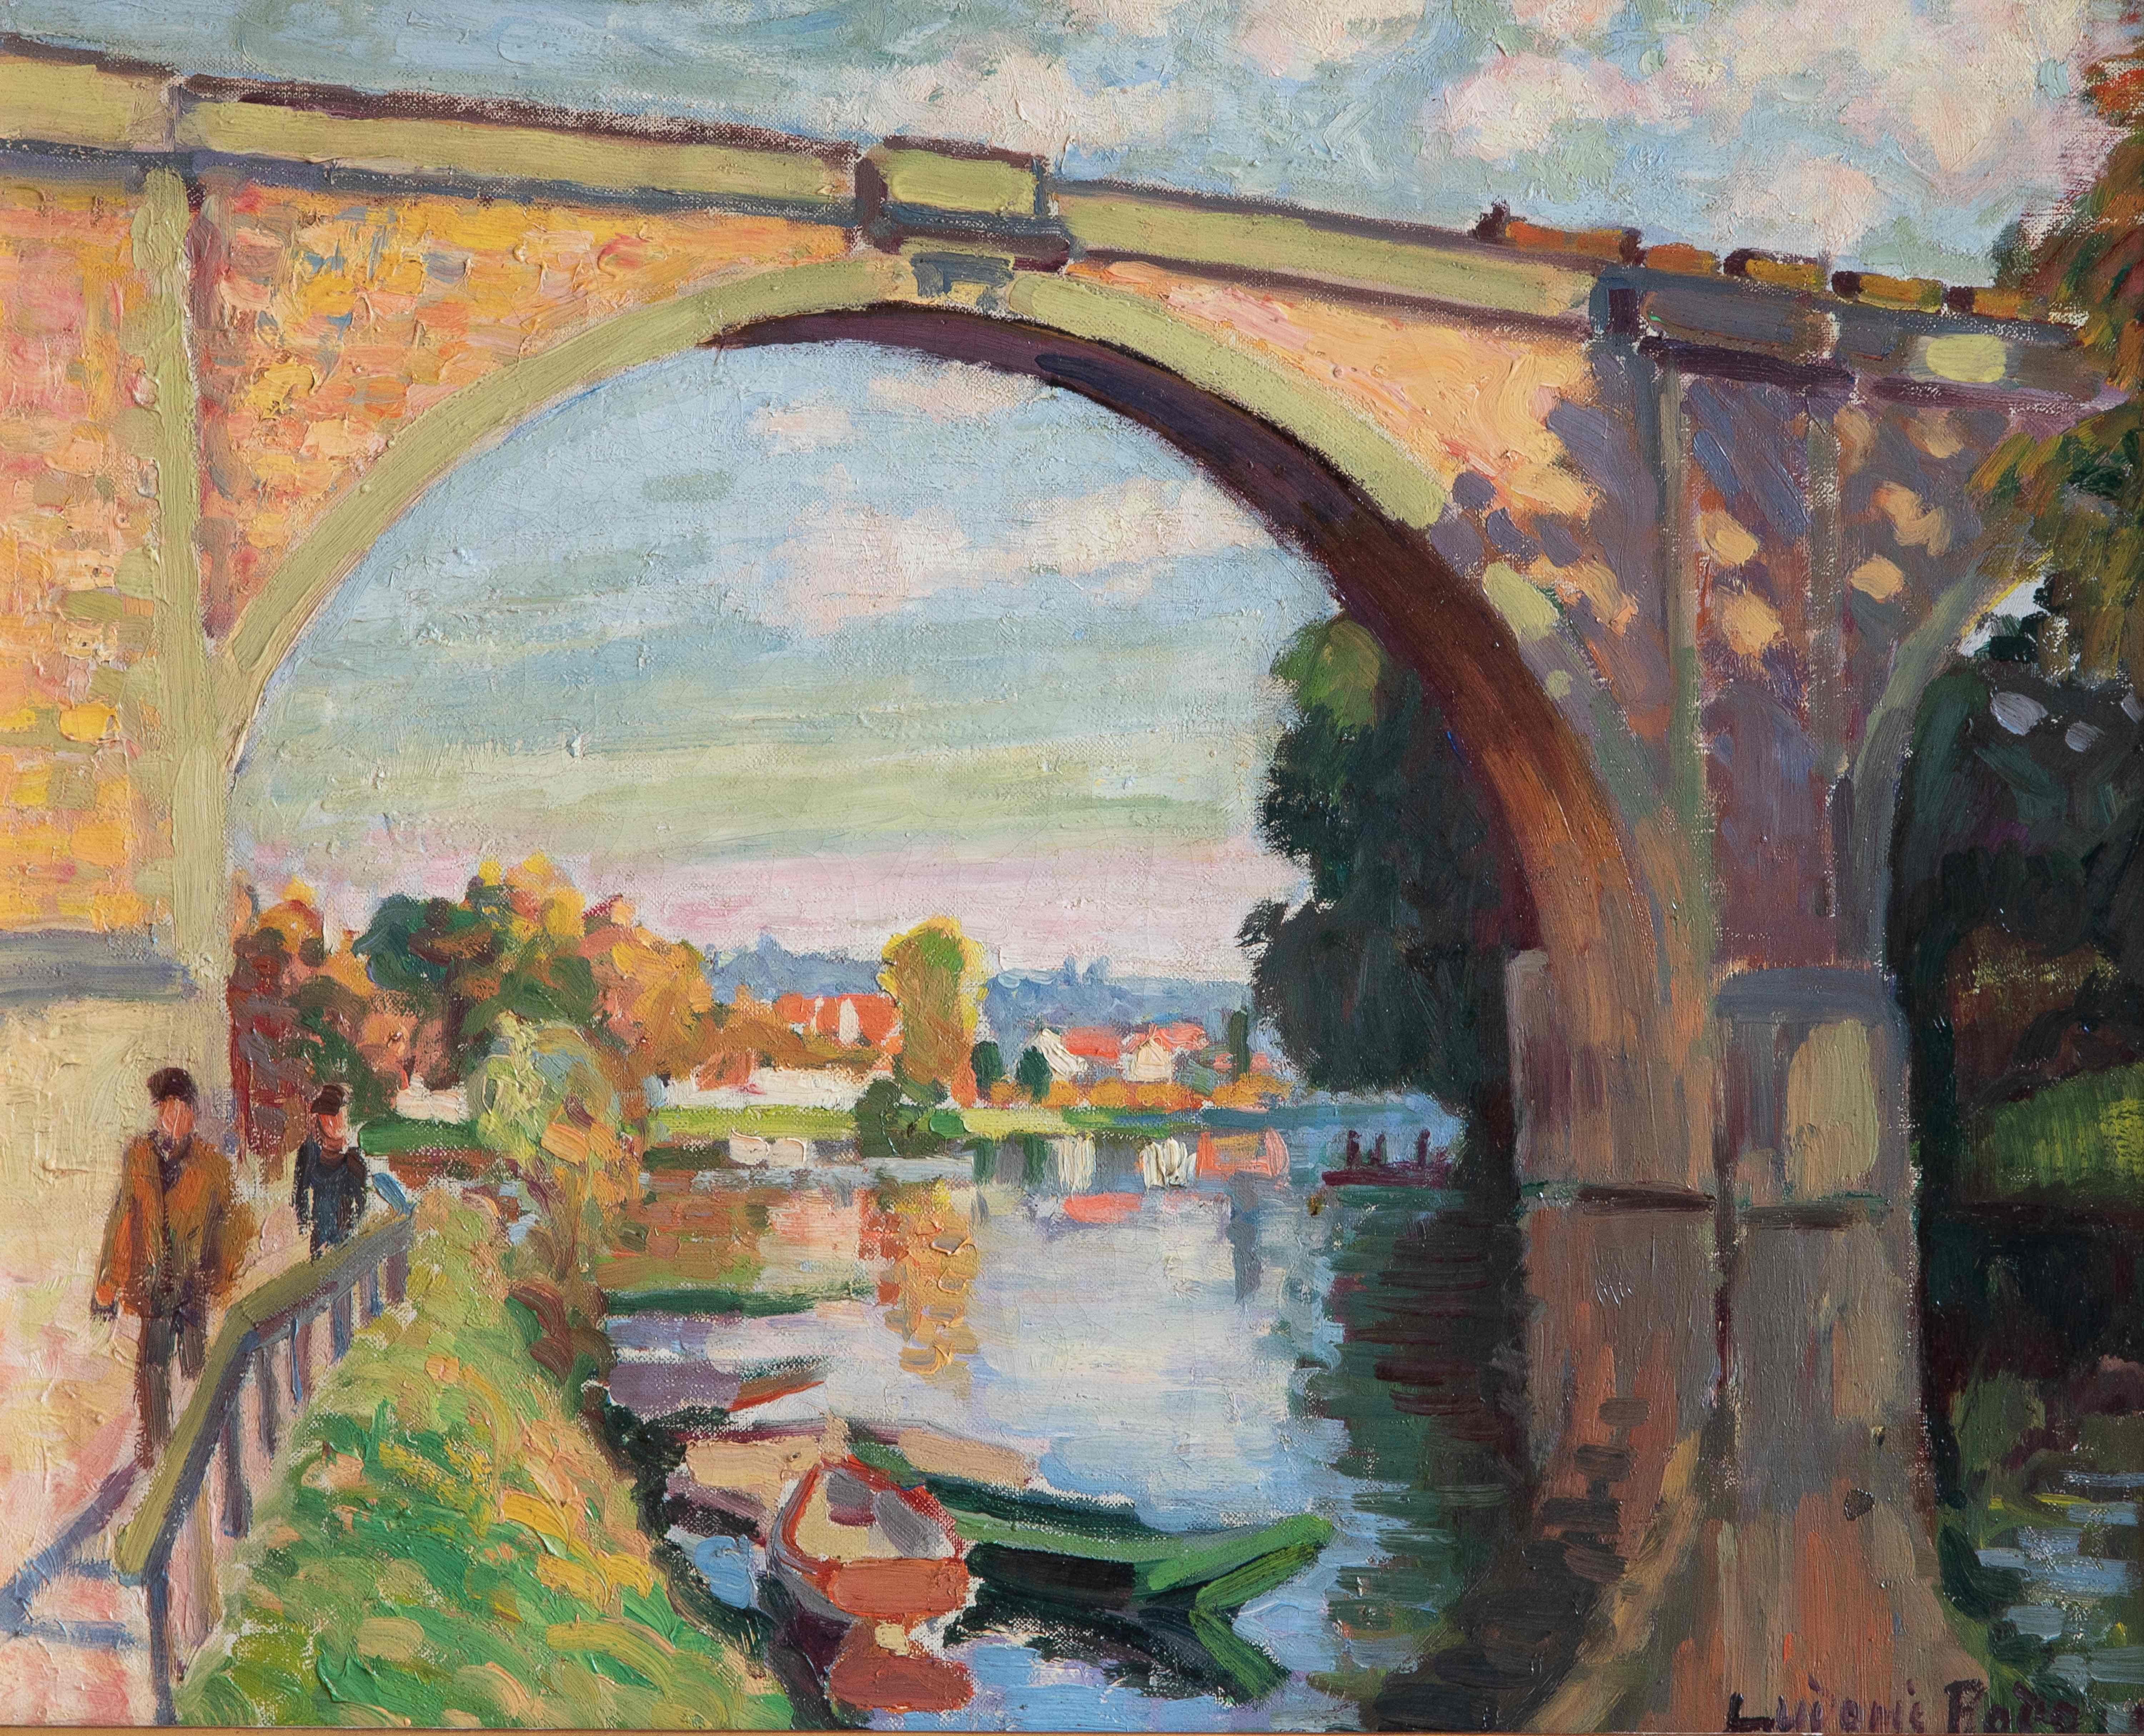 Eisenbahnbrücke über die Marne bei Joinville von Ludovic-Rodo Pissarro (1878-1952)
Öl auf Leinwand
33 x 41 cm (13 x 16 ¹/₈ Zoll)
Signiert unten rechts, Ludovic Rodo. 
Ausgeführt um 1905

Dieses Werk wird von einem Echtheitszertifikat von Lélia